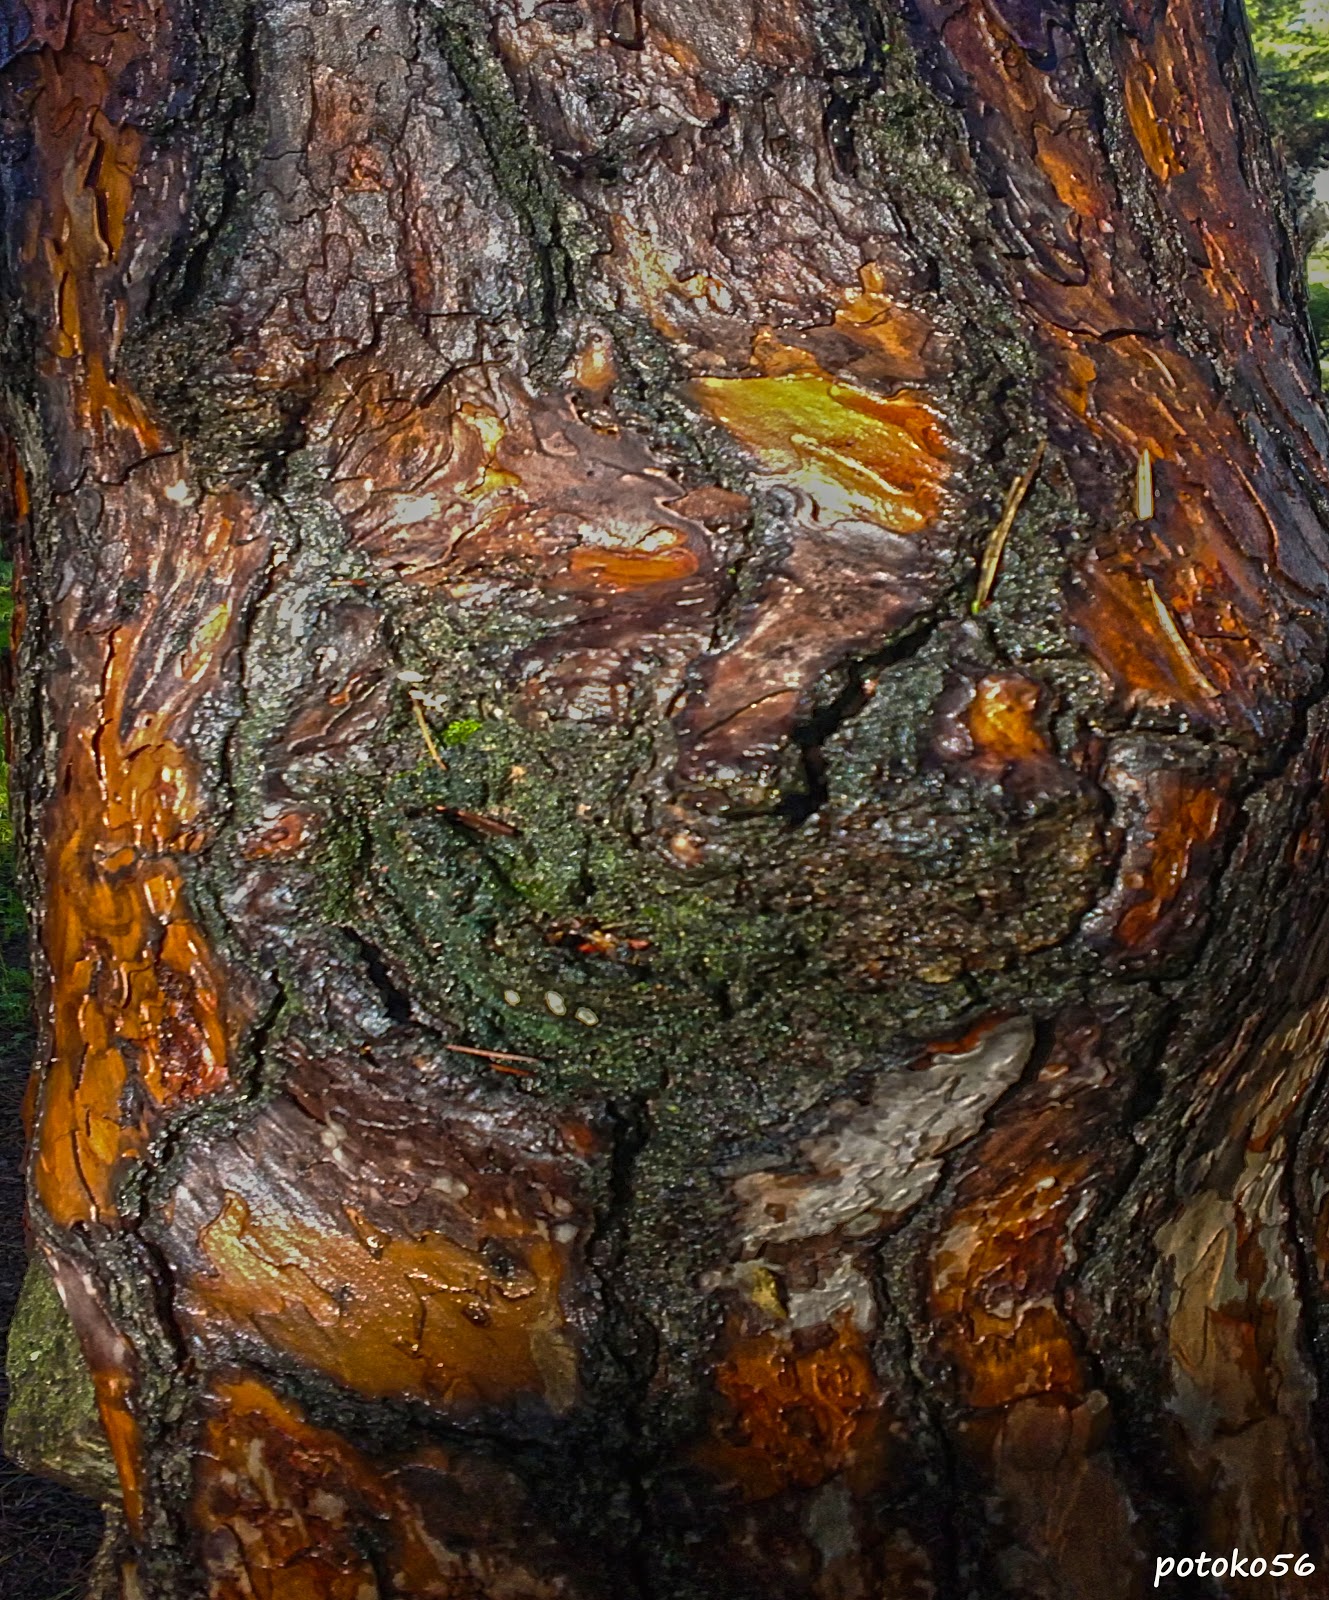 Nudo de árbol, Tronco de pino,  Árbol adulto, Fotografía